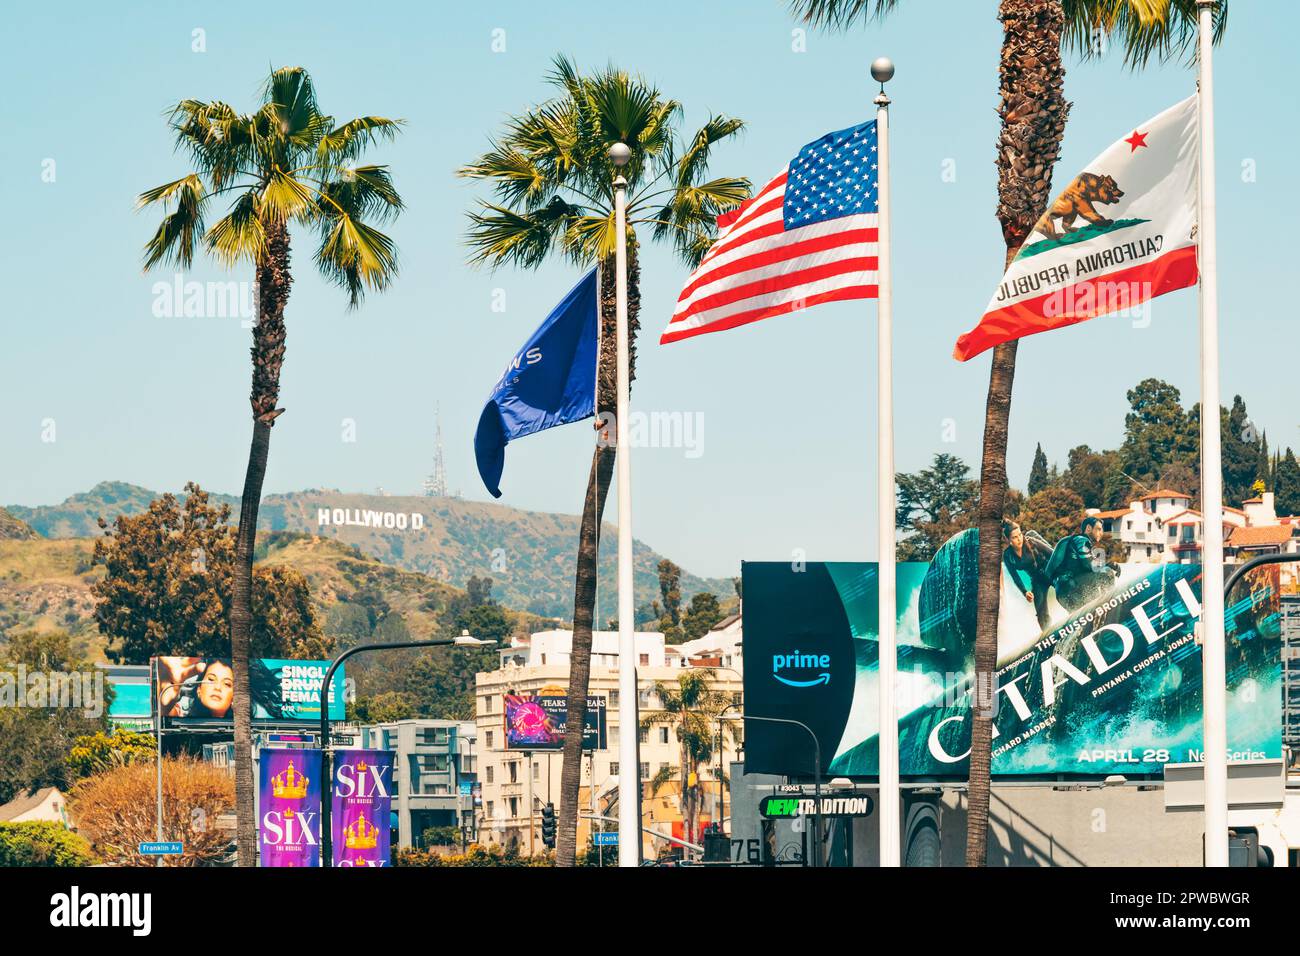 Los Angeles, Kalifornien, USA - 26. April 2023. Hollywood-Hügel und Hollywood-Schild, bunte Plakate, Palmen, Verkehr, Touristen Stockfoto